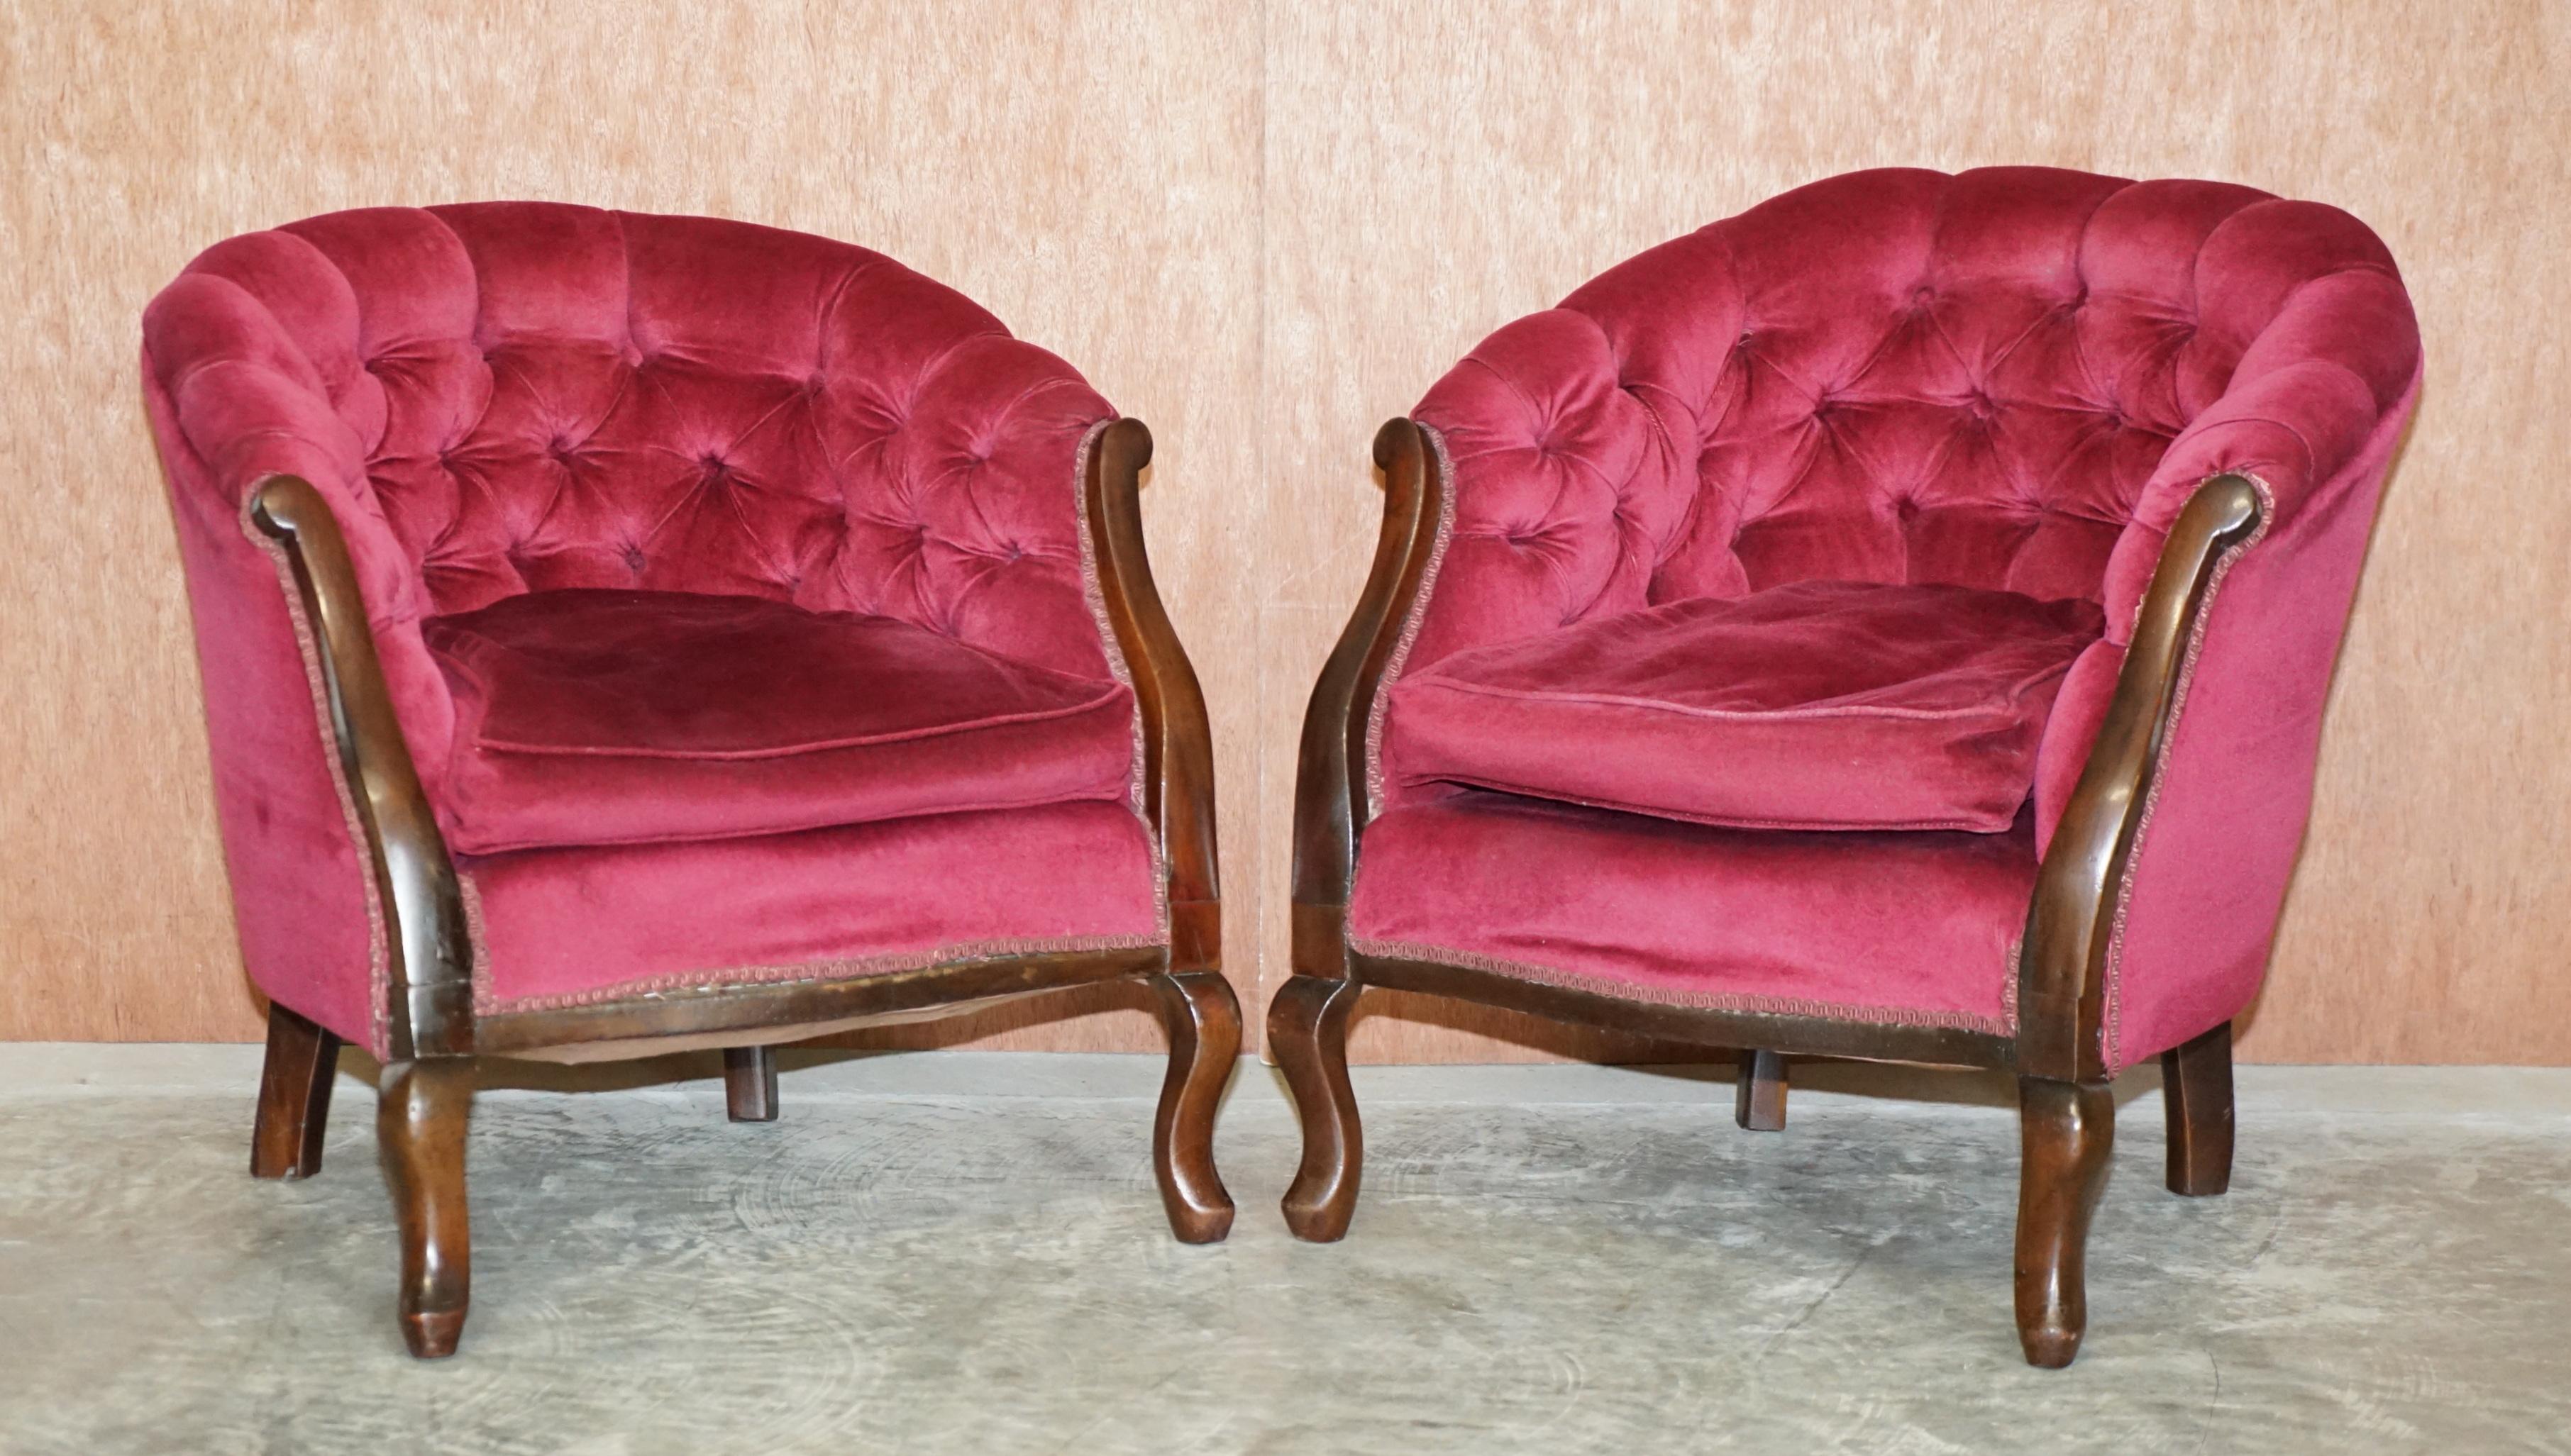 Nous sommes ravis d'offrir à la vente ce charmant salon victorien Chesterfield en velours rose et acajou. 

Une suite très élégante et bien faite, les cadres sont en acajou et la tapisserie en velours rose. Ces ensembles sont très confortables et